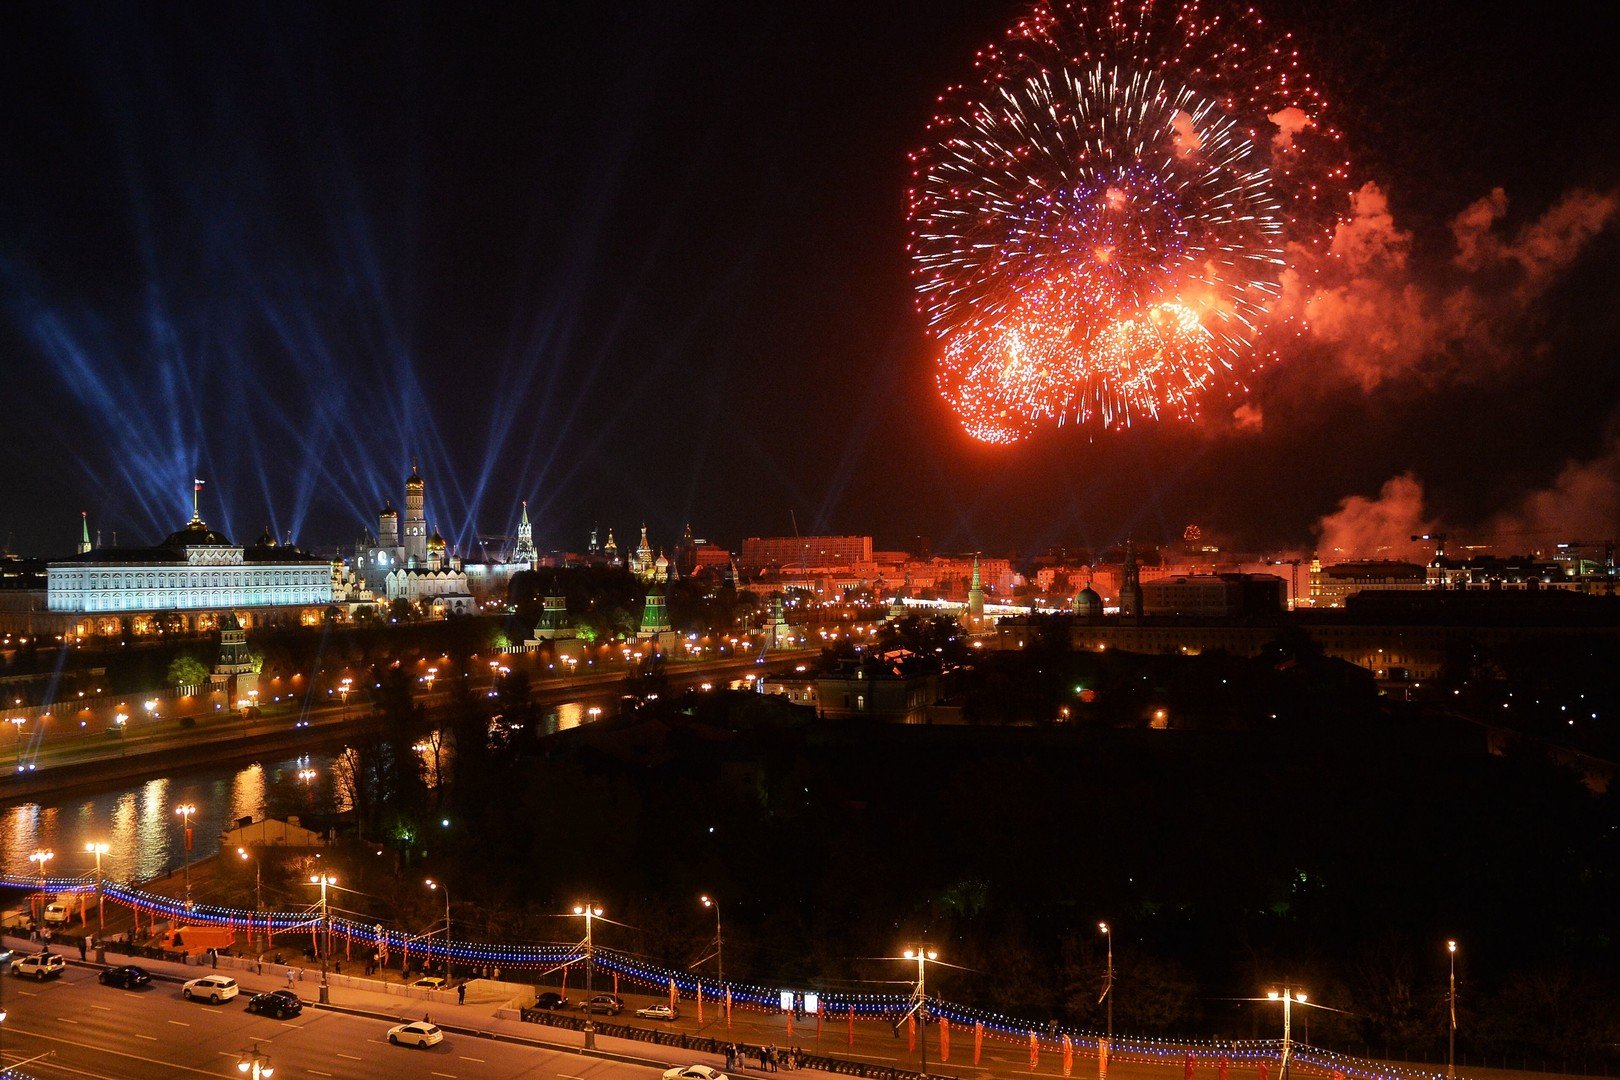 ألعاب نارية في سماء روسيا بمناسبة عيد النصر (فيديو + صور)